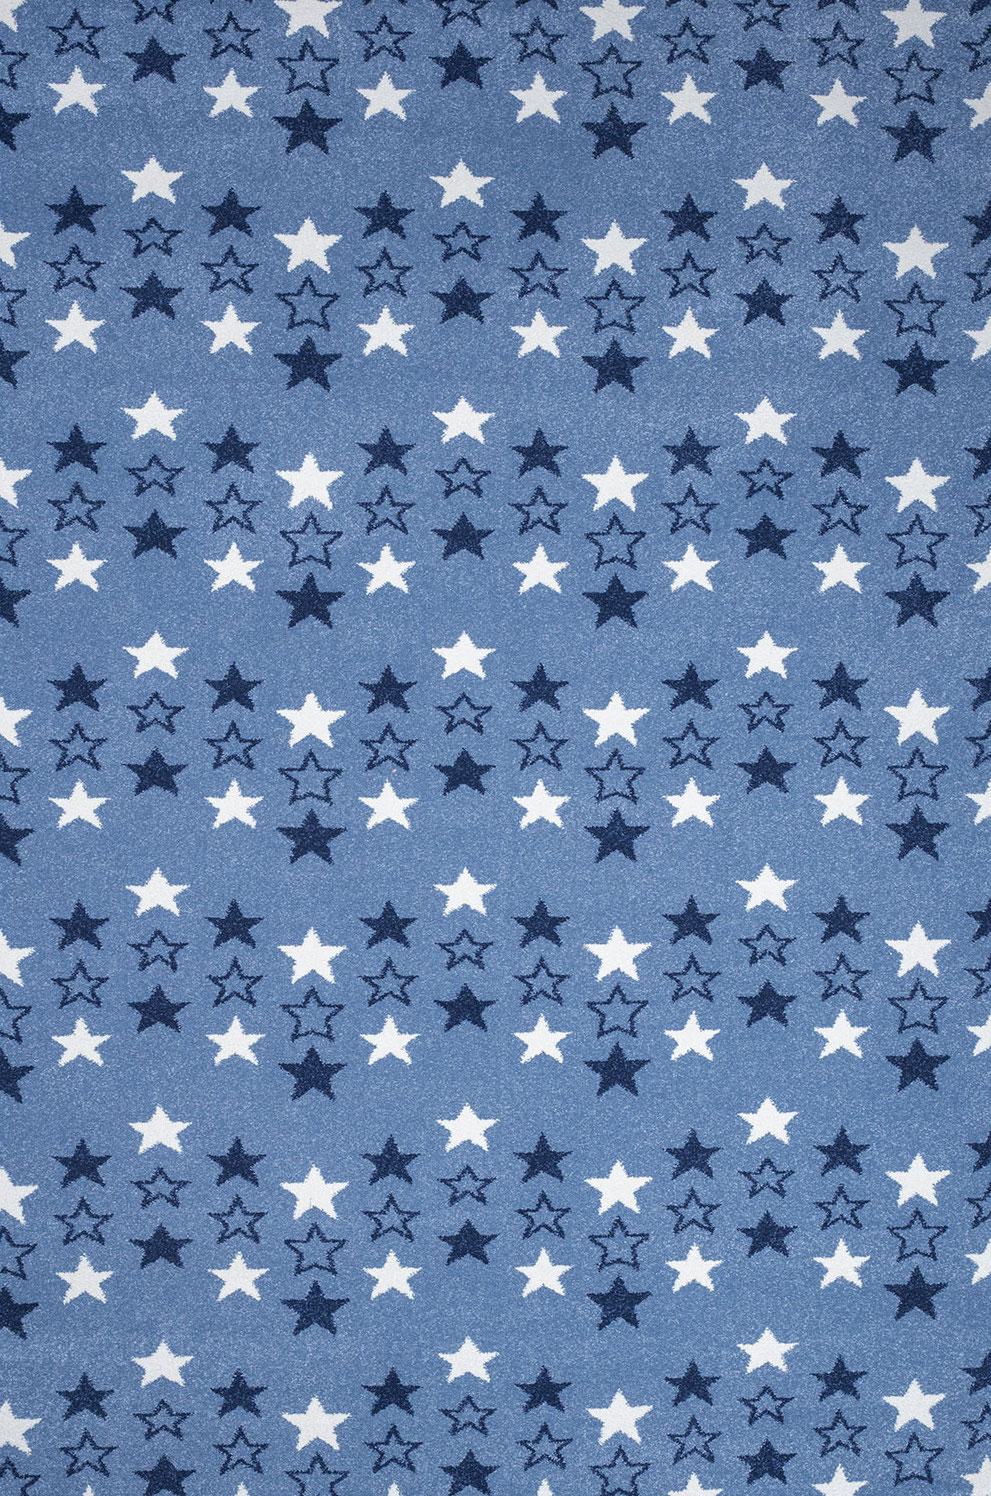 Παιδικό χαλί Diamond kids 8469/330 ραφ μπλε αστεράκια - 1,30x1,90 Colore Colori